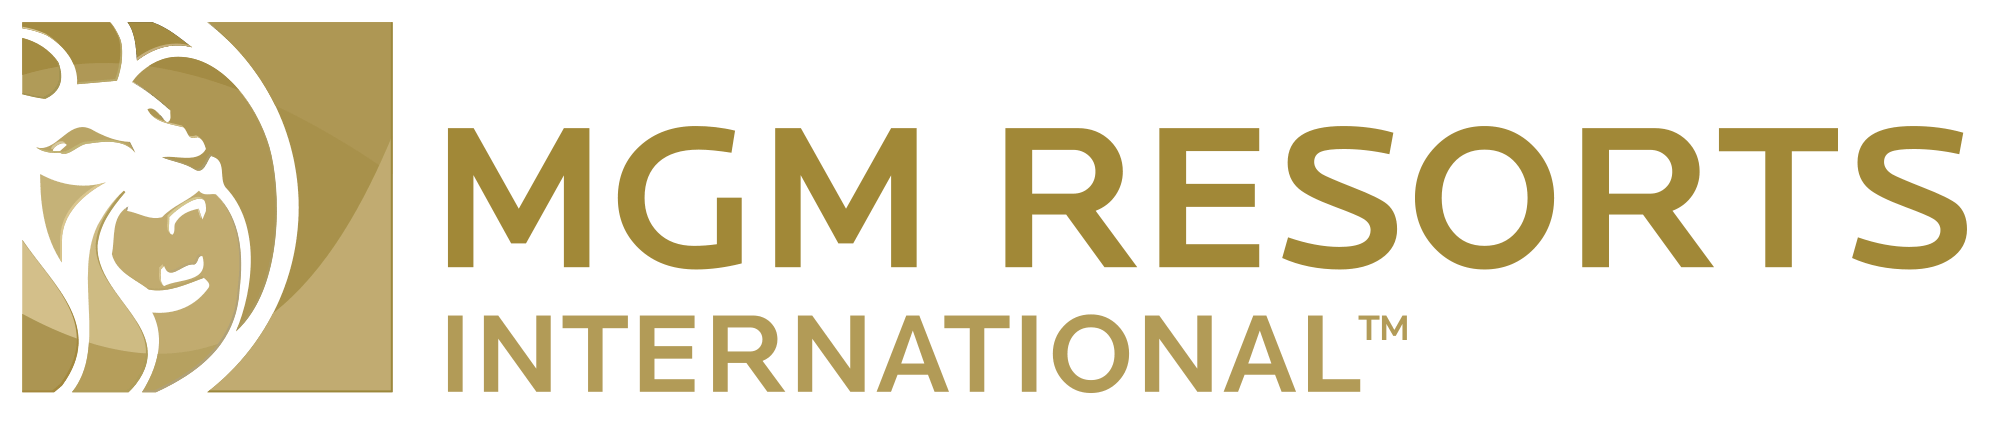 mgmresorts-international-logo-2000x422.png